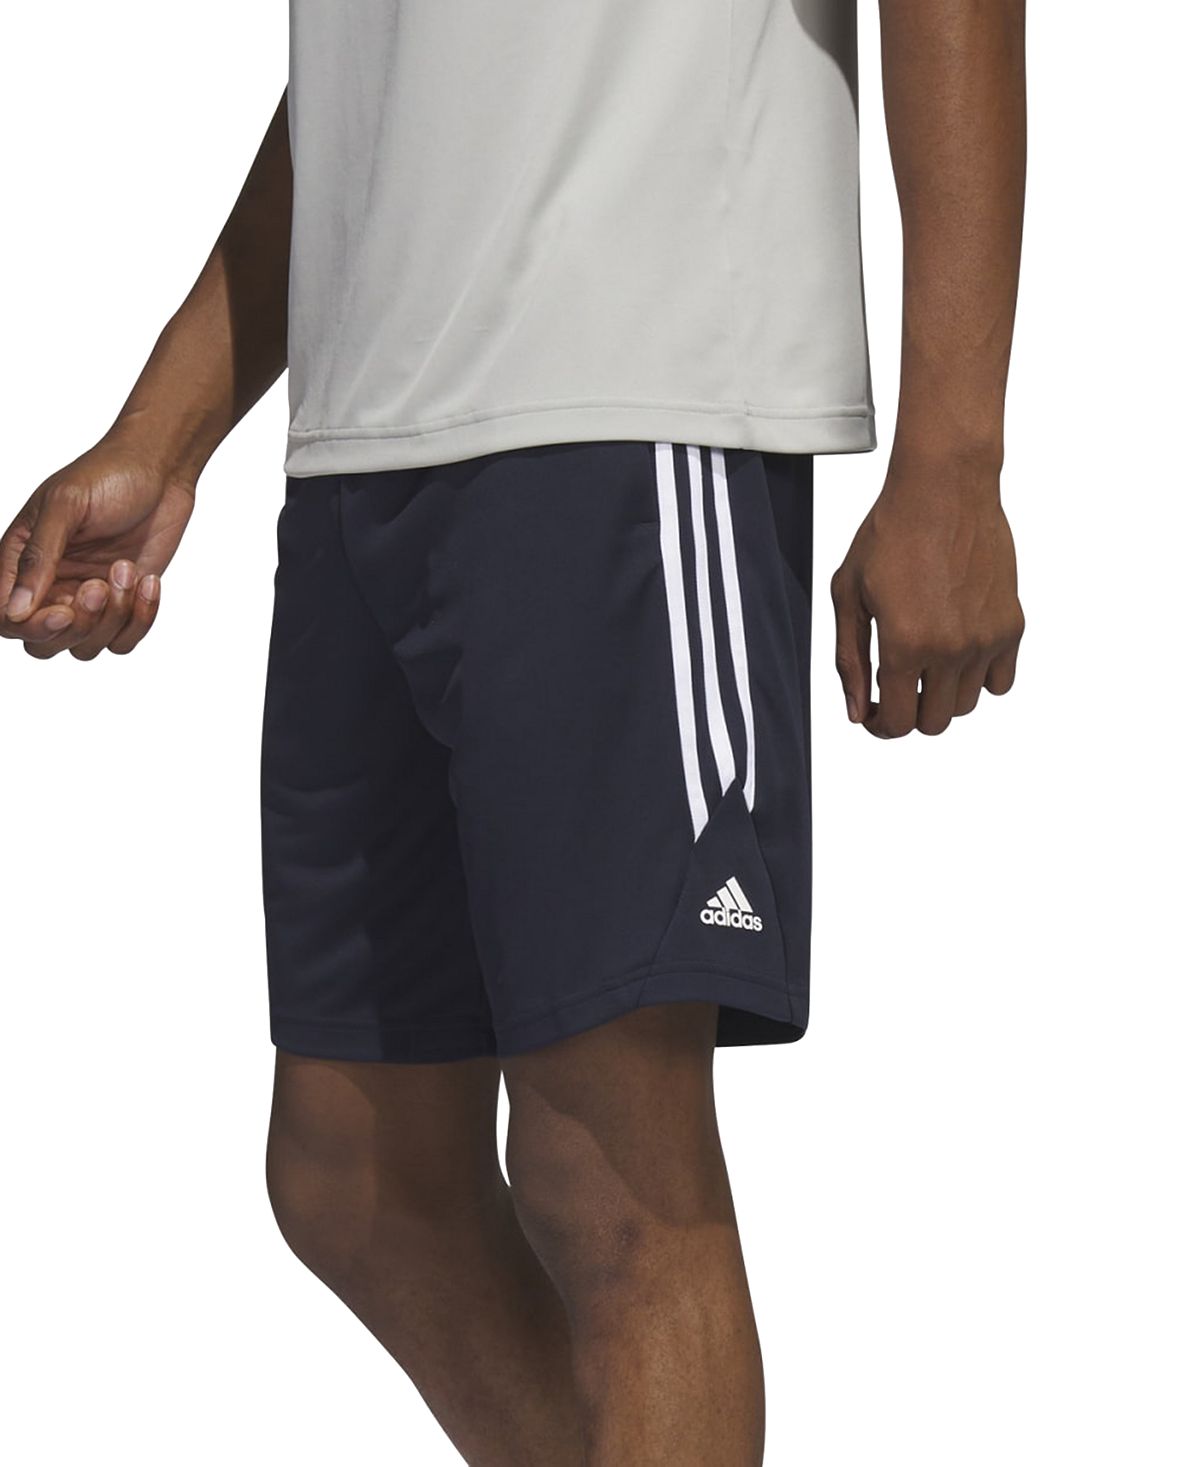 Мужские баскетбольные шорты Legends с 3 полосками 11 дюймов adidas толстовка adidas stadium fleece badge of sport sweatshirt бежевый